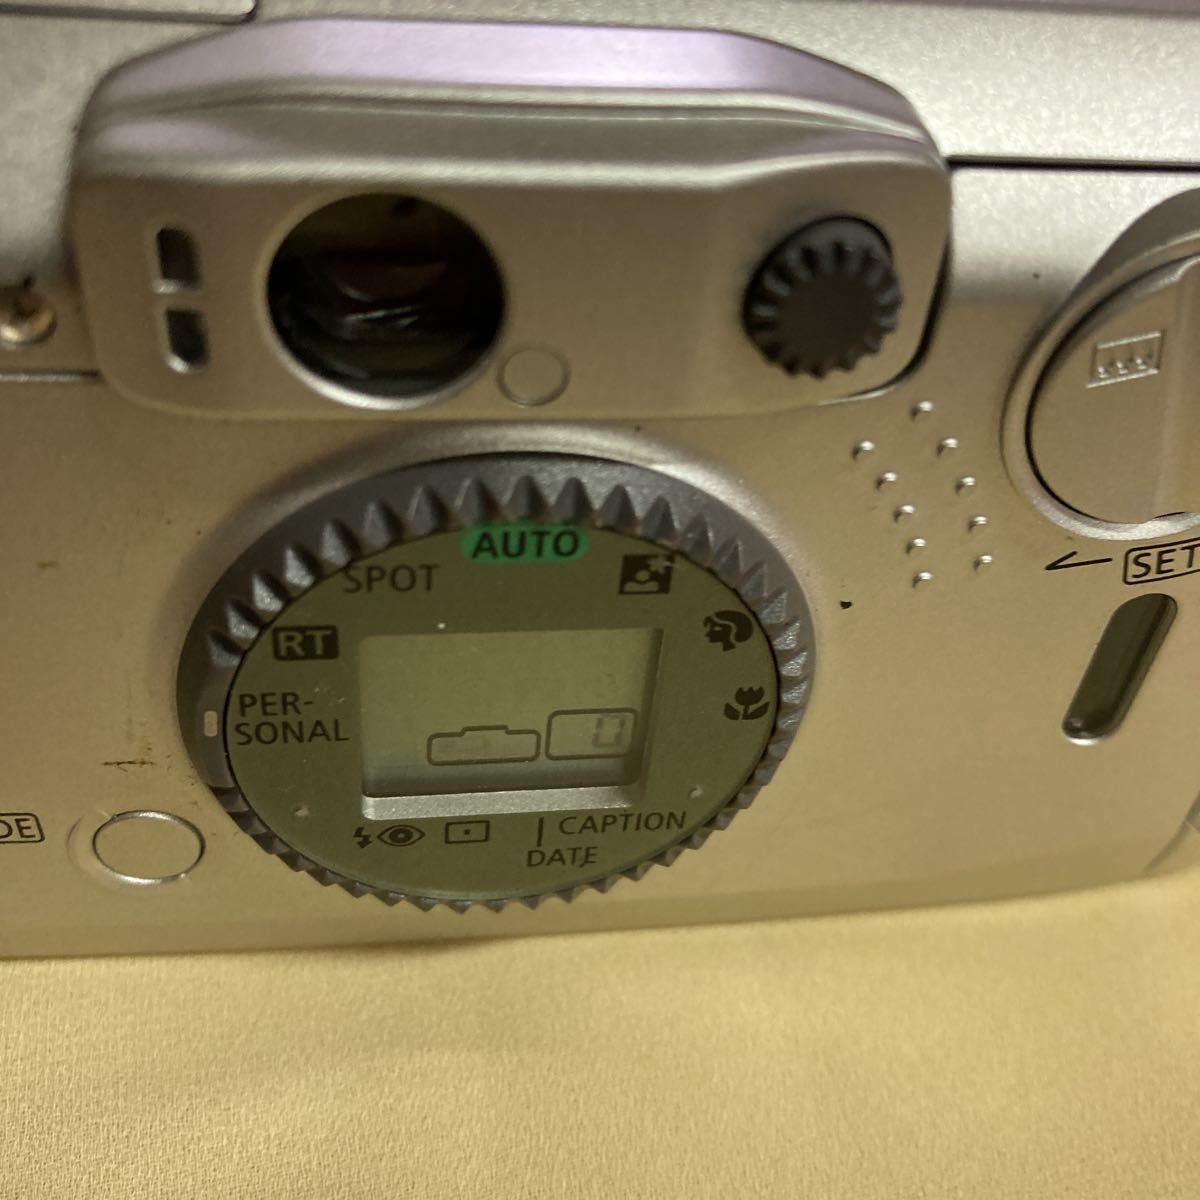 Canon Autoboy Epo 28-90mm コンパクトカメラ フィルムカメラ レトロ キャノン レア 名機の画像4